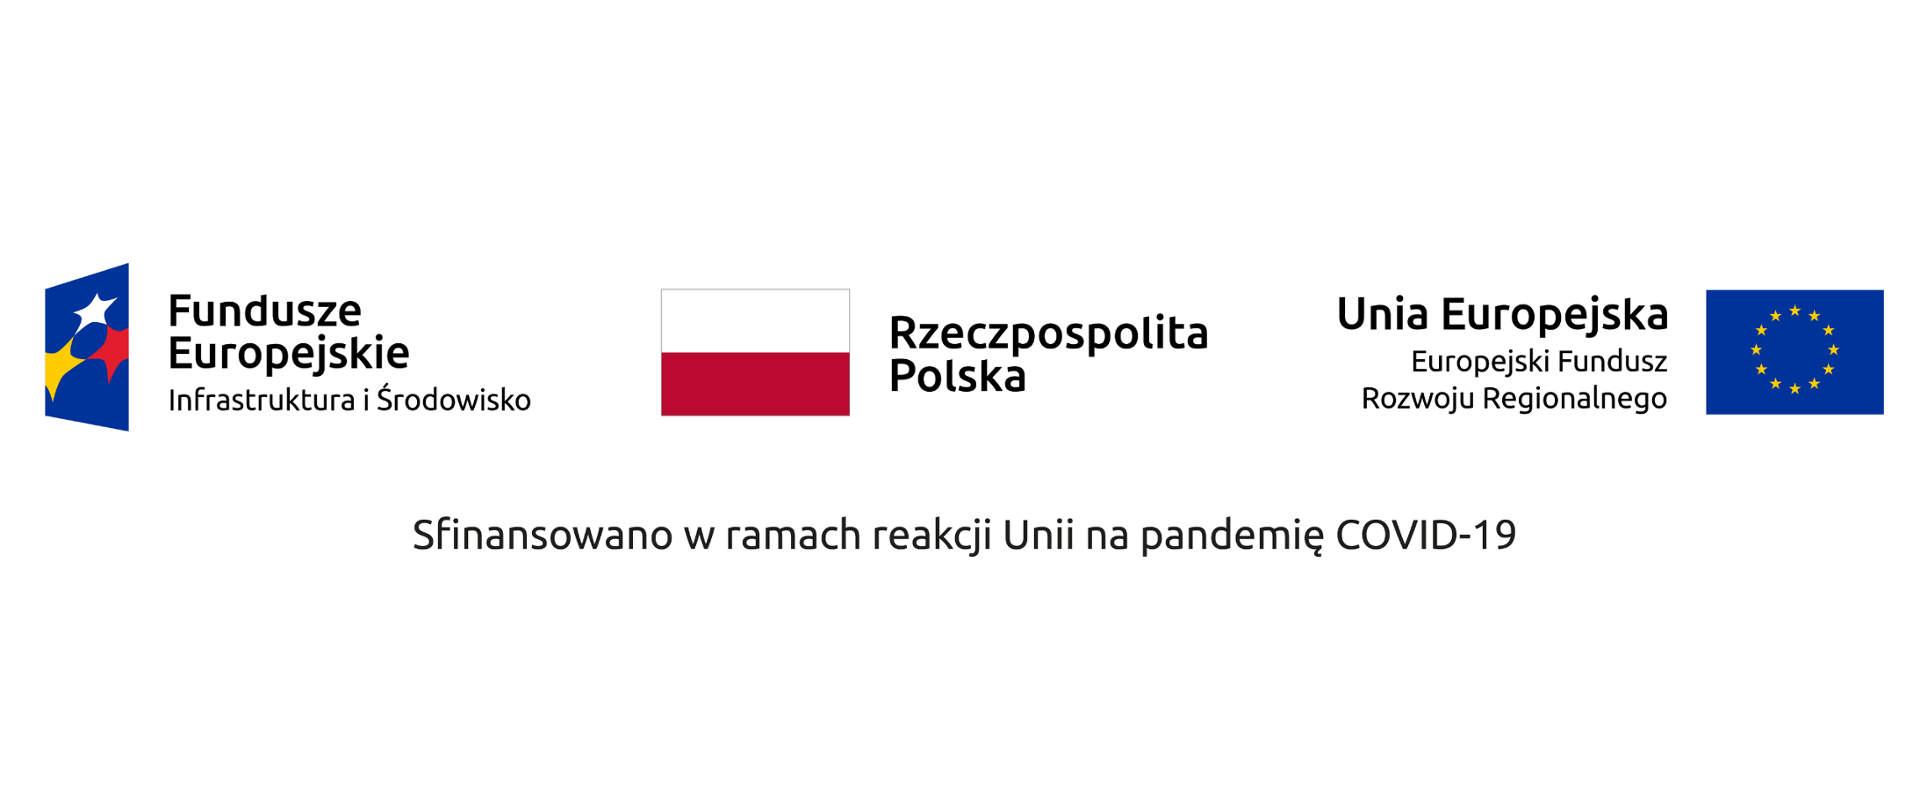 Banner na białym tle, logotypy z opisami: od lewej: Fundusze Europejskiej Infrastruktura i Środowisko, Rzeczpospolita Polska, Unia Europejska Europejski Fundusz Rozwoju Regionalnego,
na dole napis Sfinansowane w ramach reakcji Unii na pandemię COVID-19